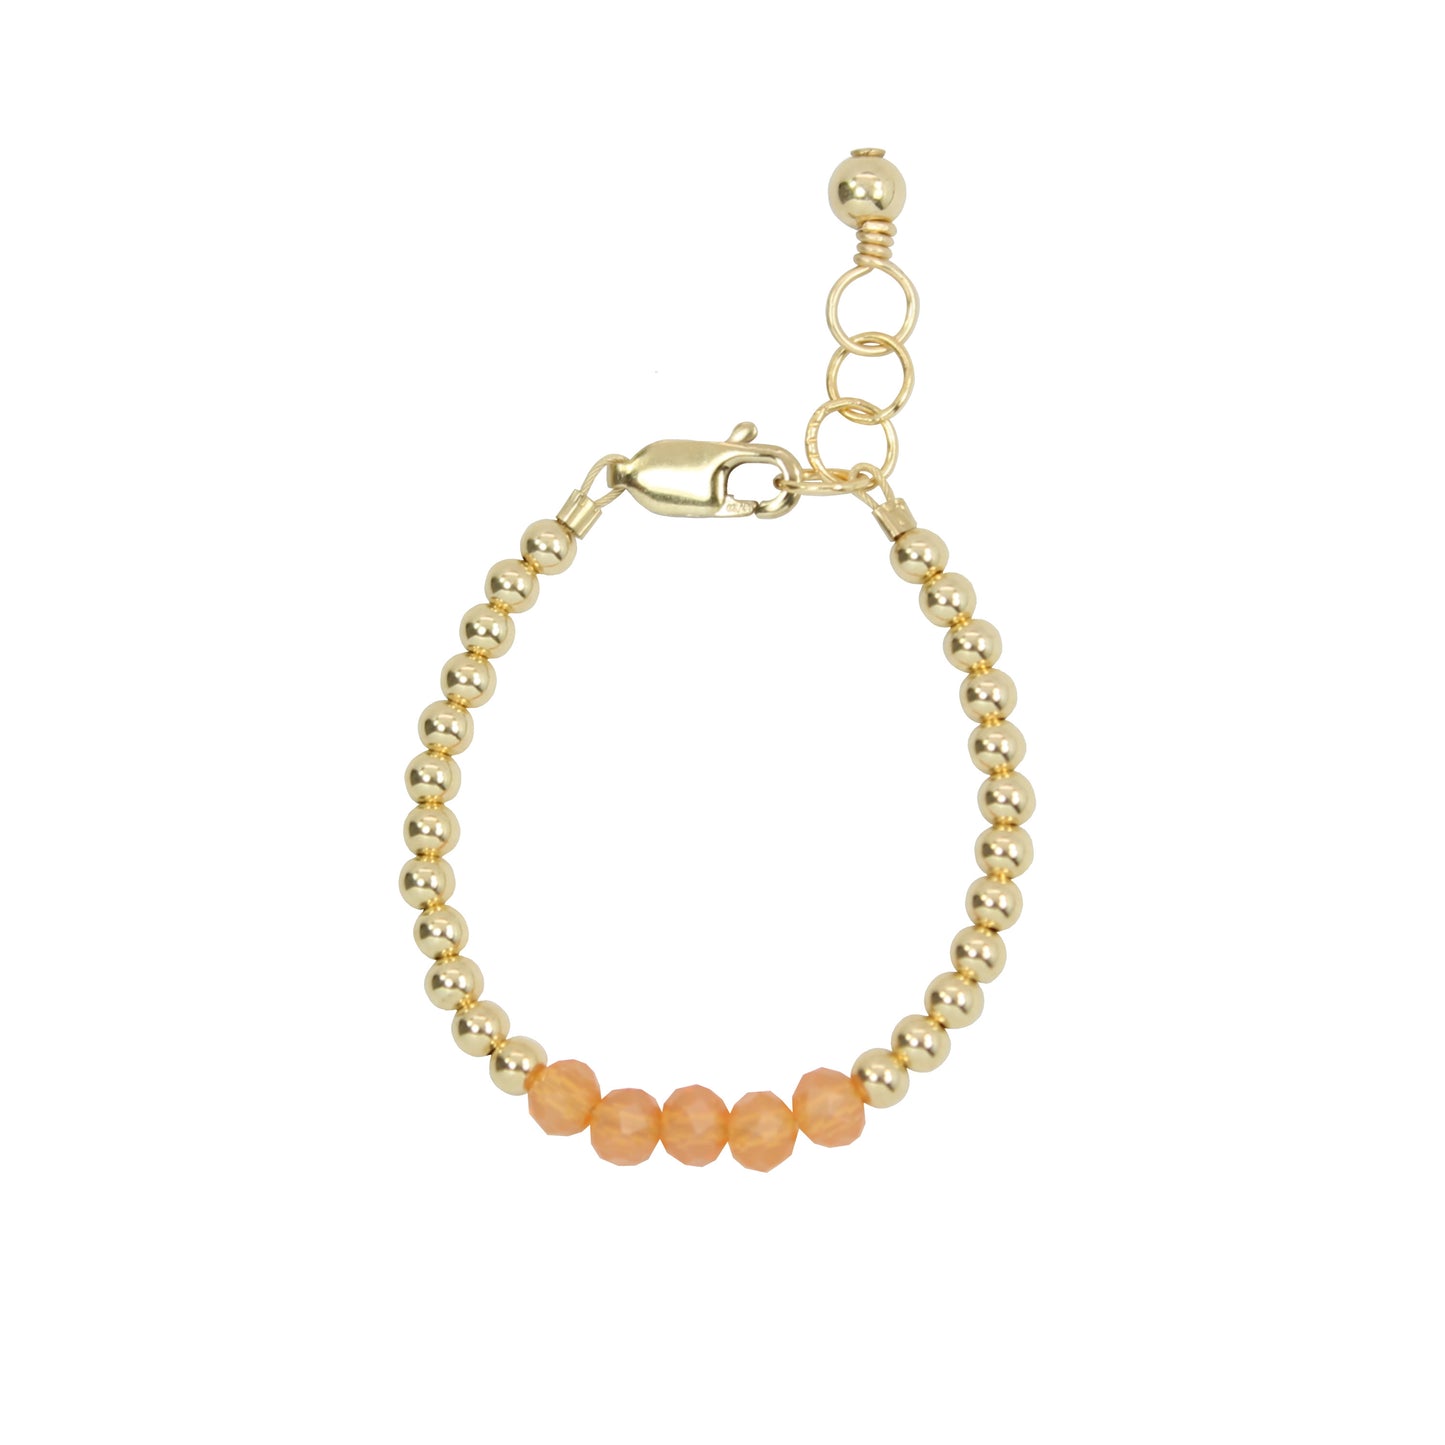 Meg Baby Bracelet (3MM + 4MM beads)